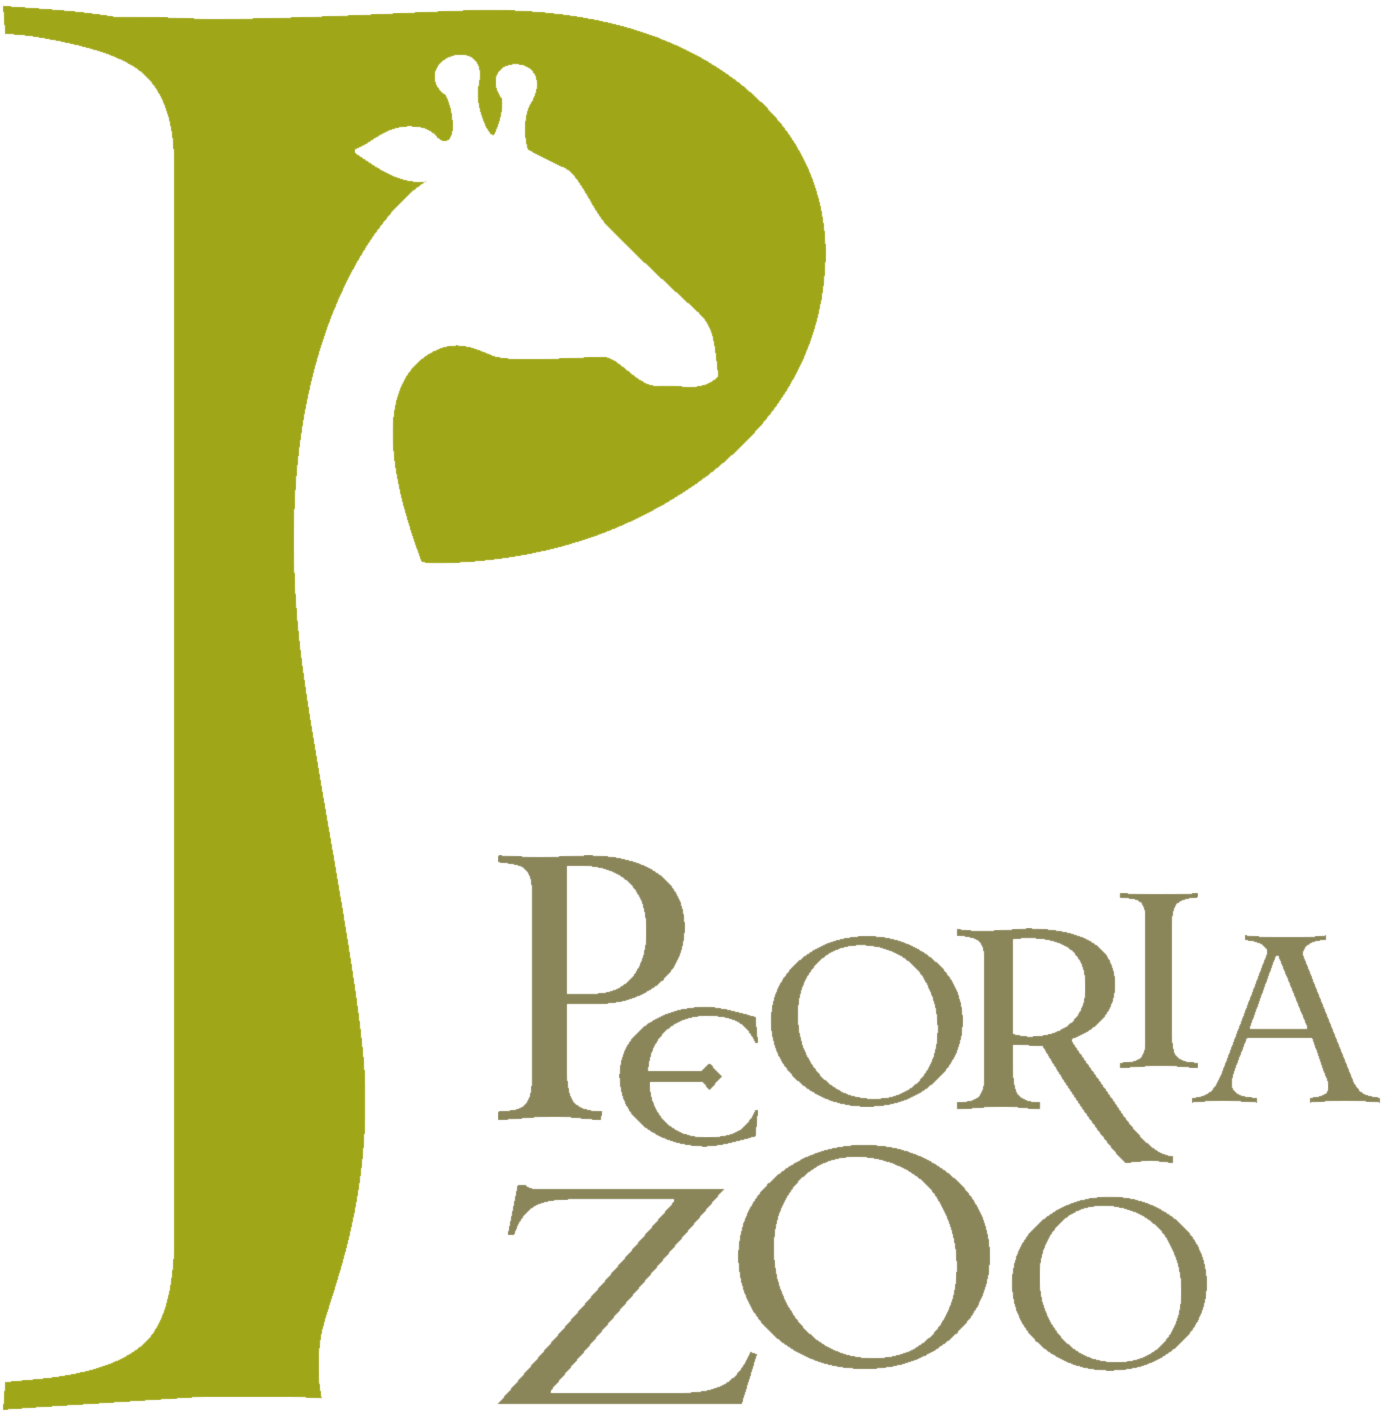 Peoria Zoo SMALL TANKS